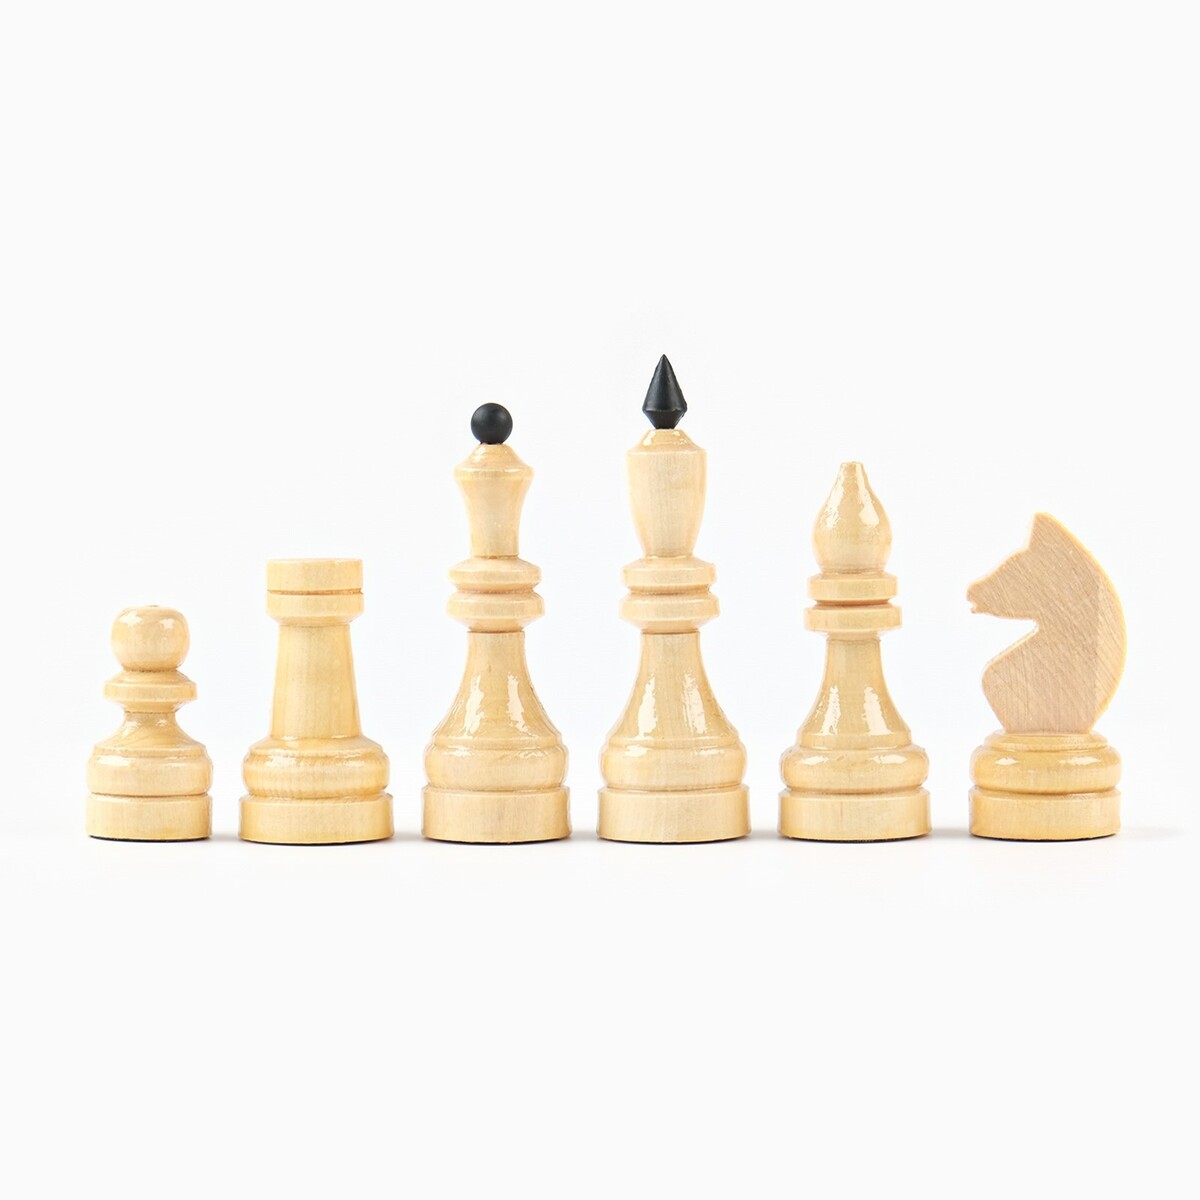 фото Шахматы деревянные гроссмейстерские, турнирные, король h-10.5 см, пешка h-5.3 см no brand